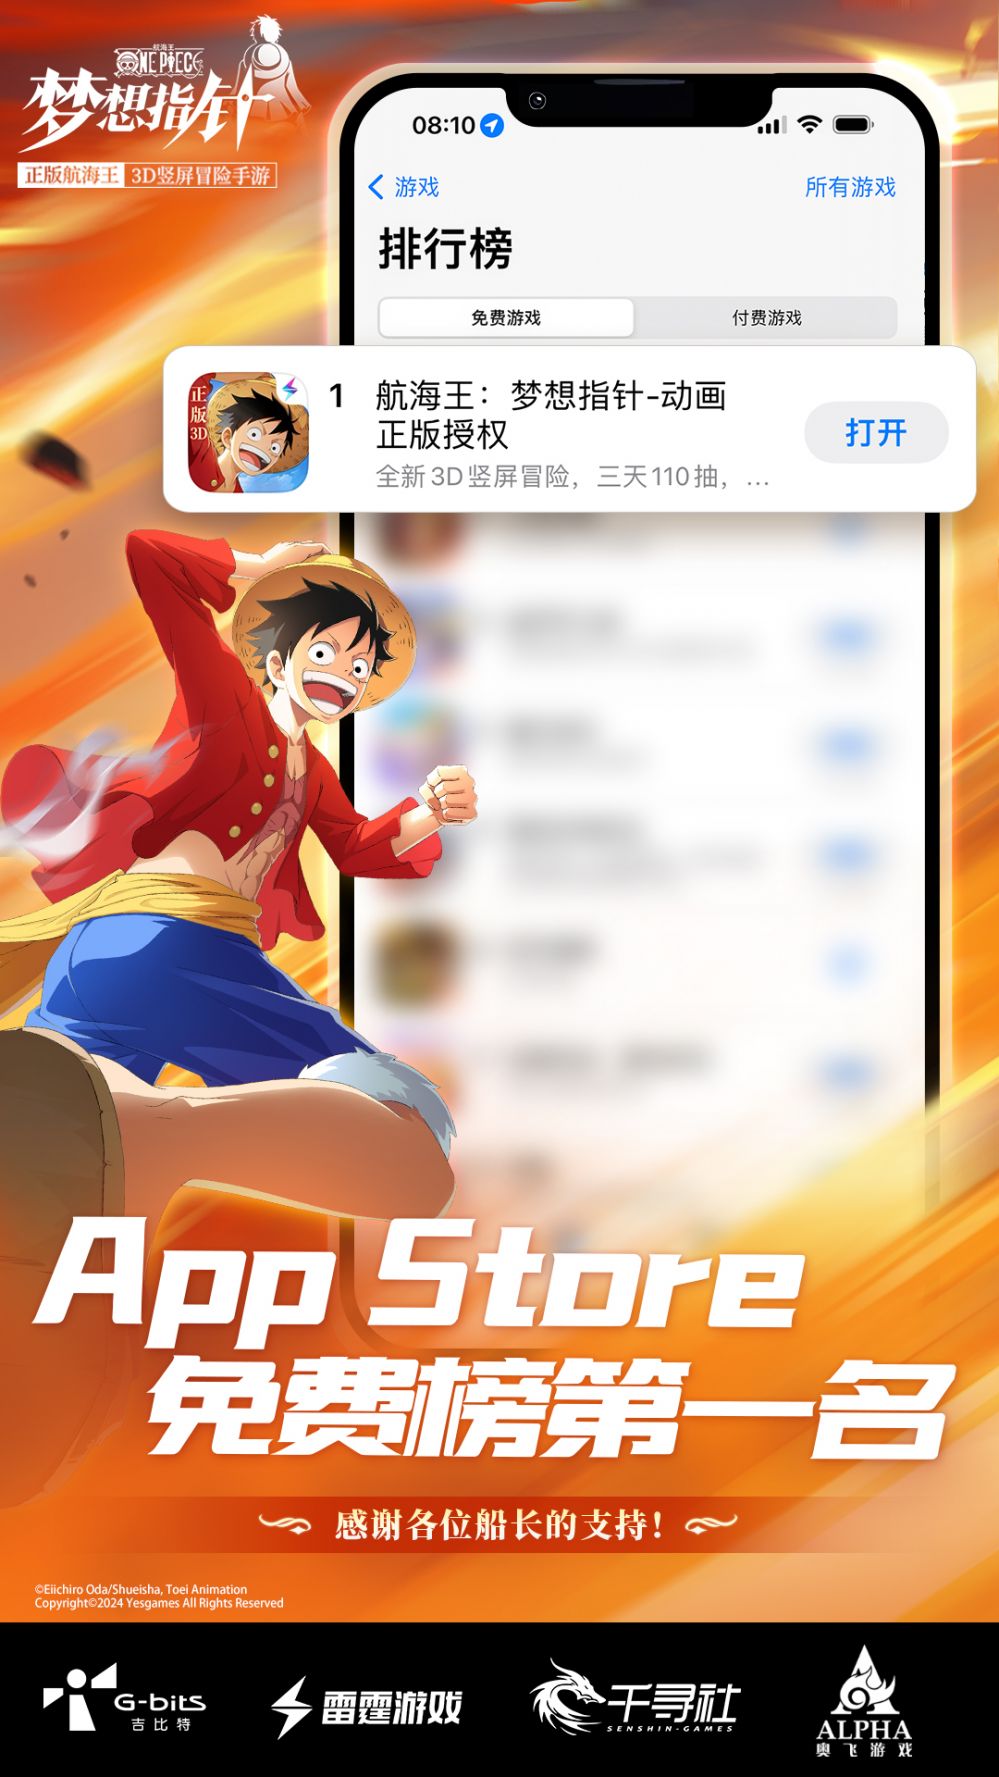 航海王梦想指针登顶AppStore免费榜